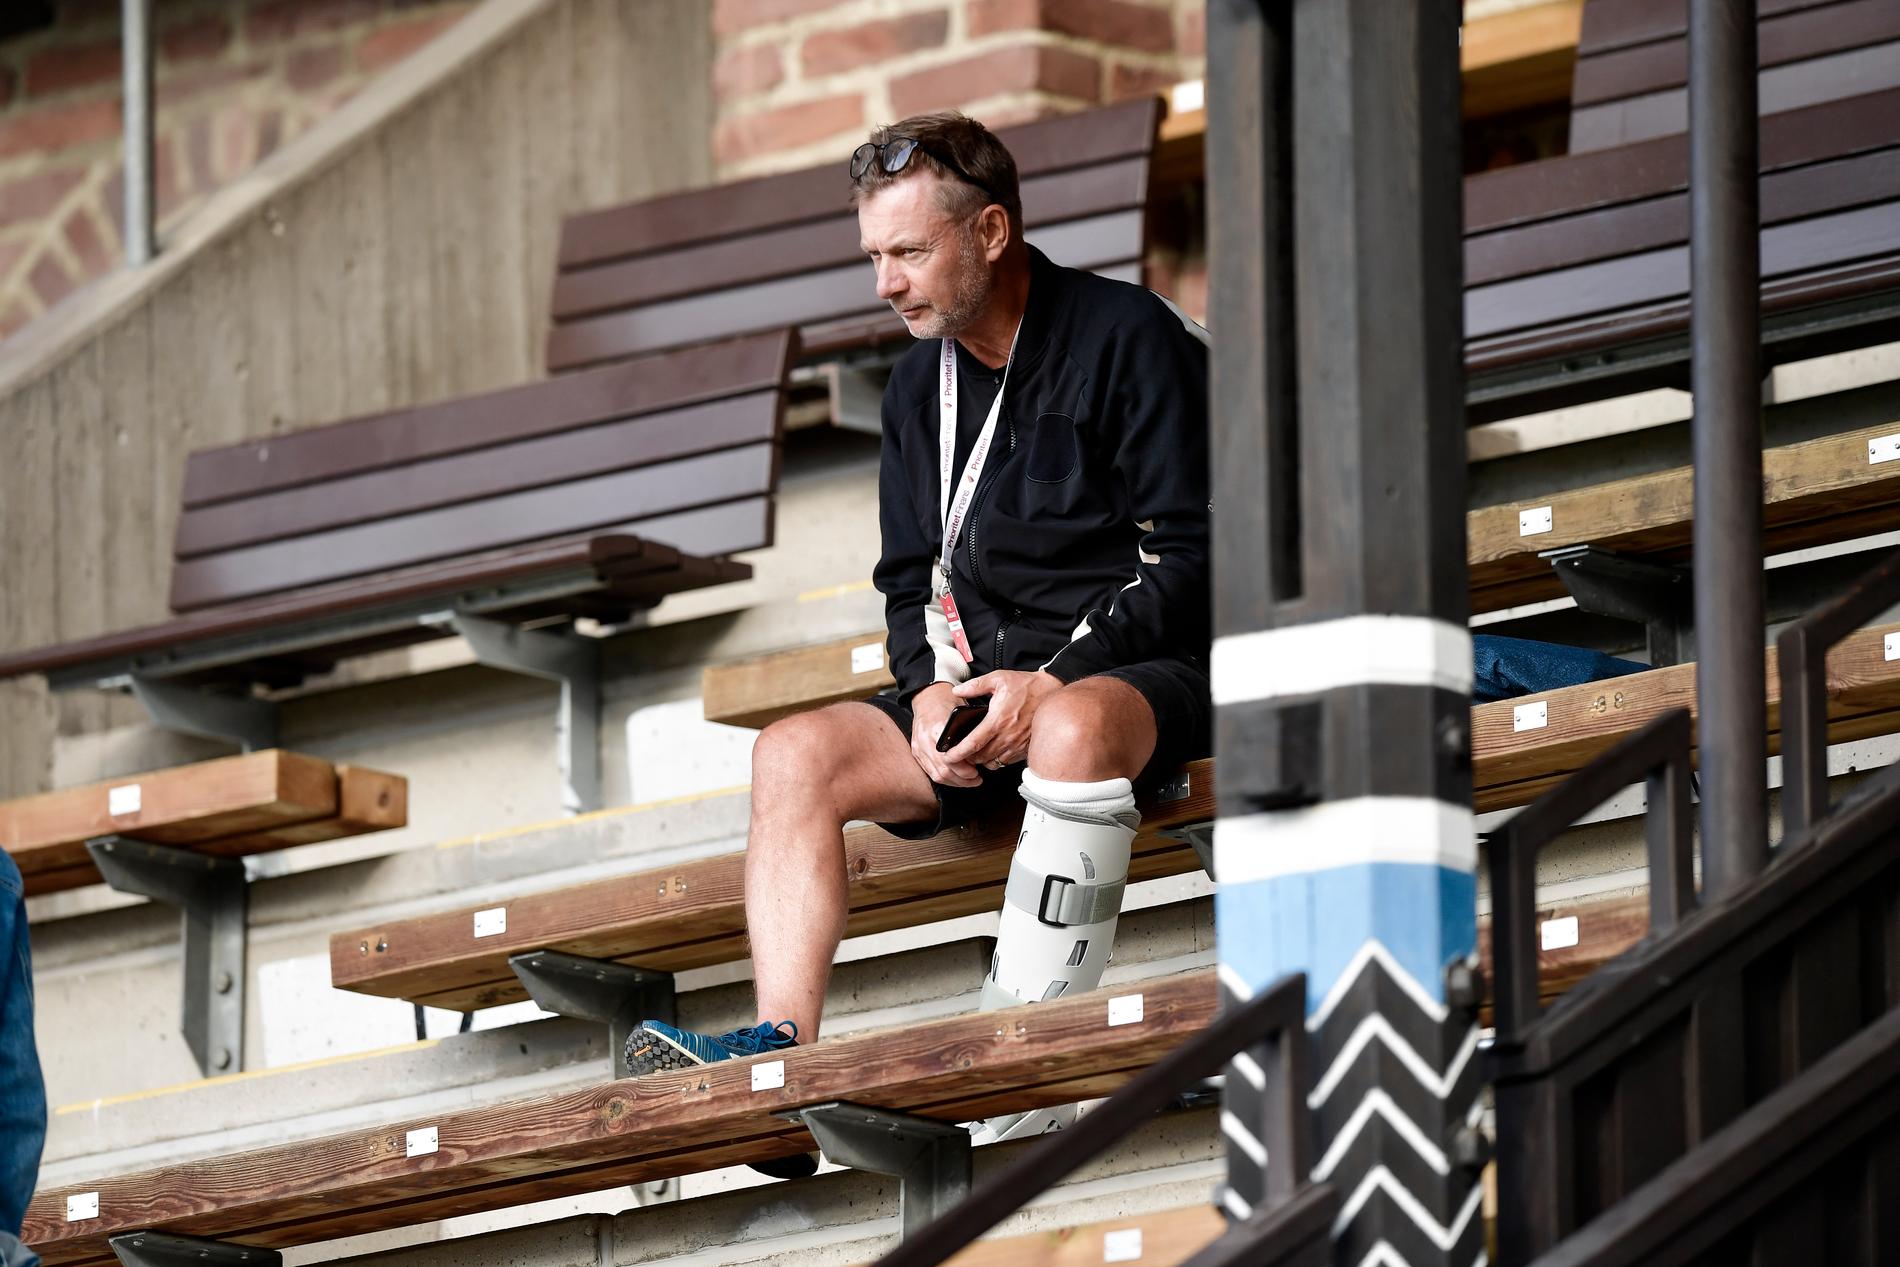 Sveriges förbundskapten Peter Gerhardsson såg det damallsvenska mötet mellan Djurgården och Eskilstuna på Stockholms stadion med en plastpjäxa runt sin hälseneskadade vänsterfot.